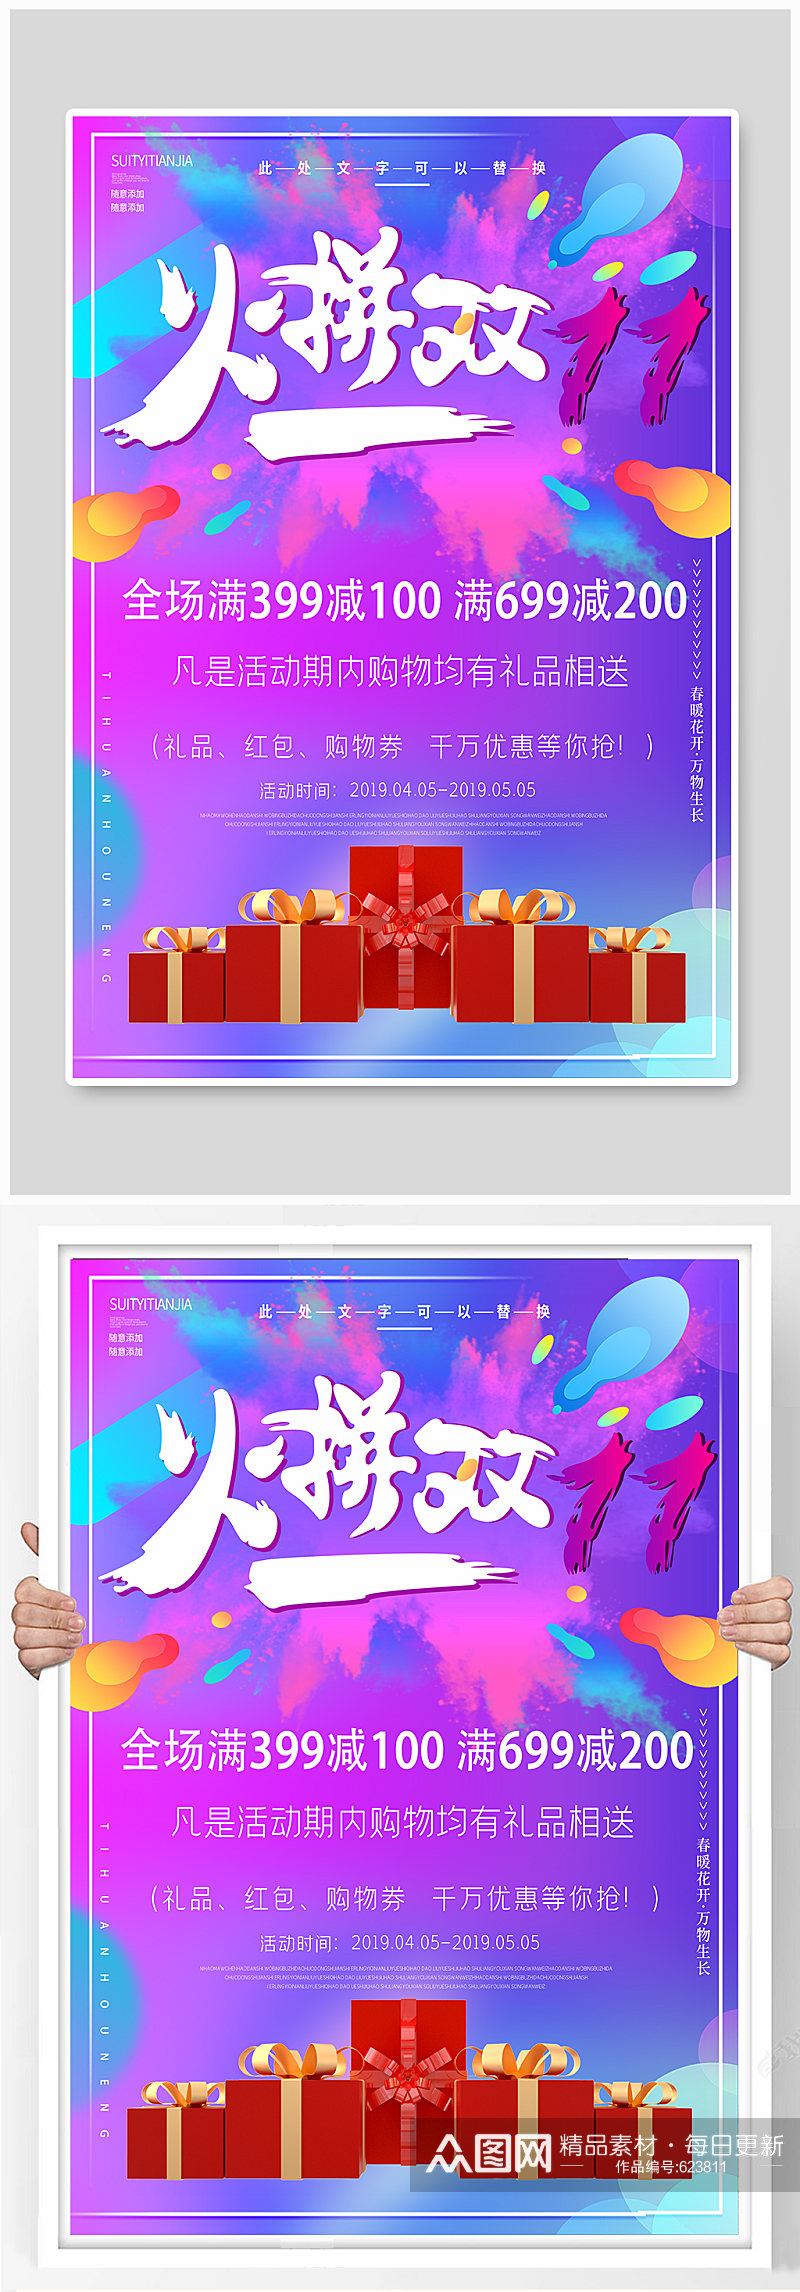 紫色梦幻火拼双11促销海报素材